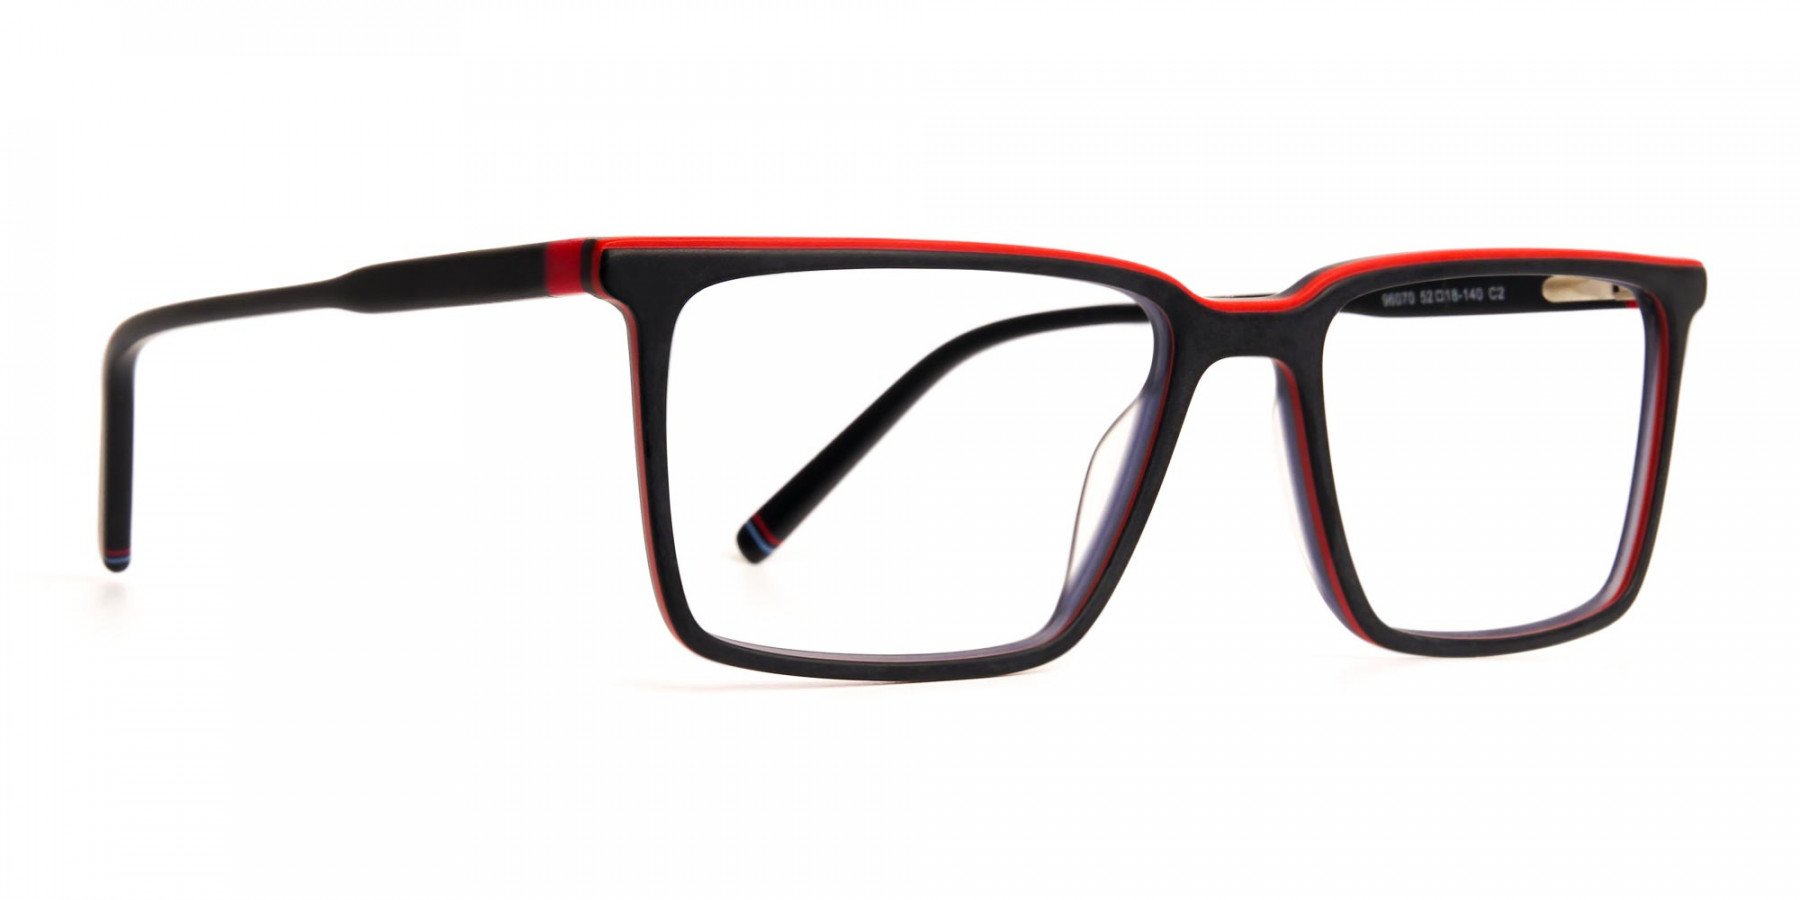 black-and-red-rectangular-glasses-frames-1